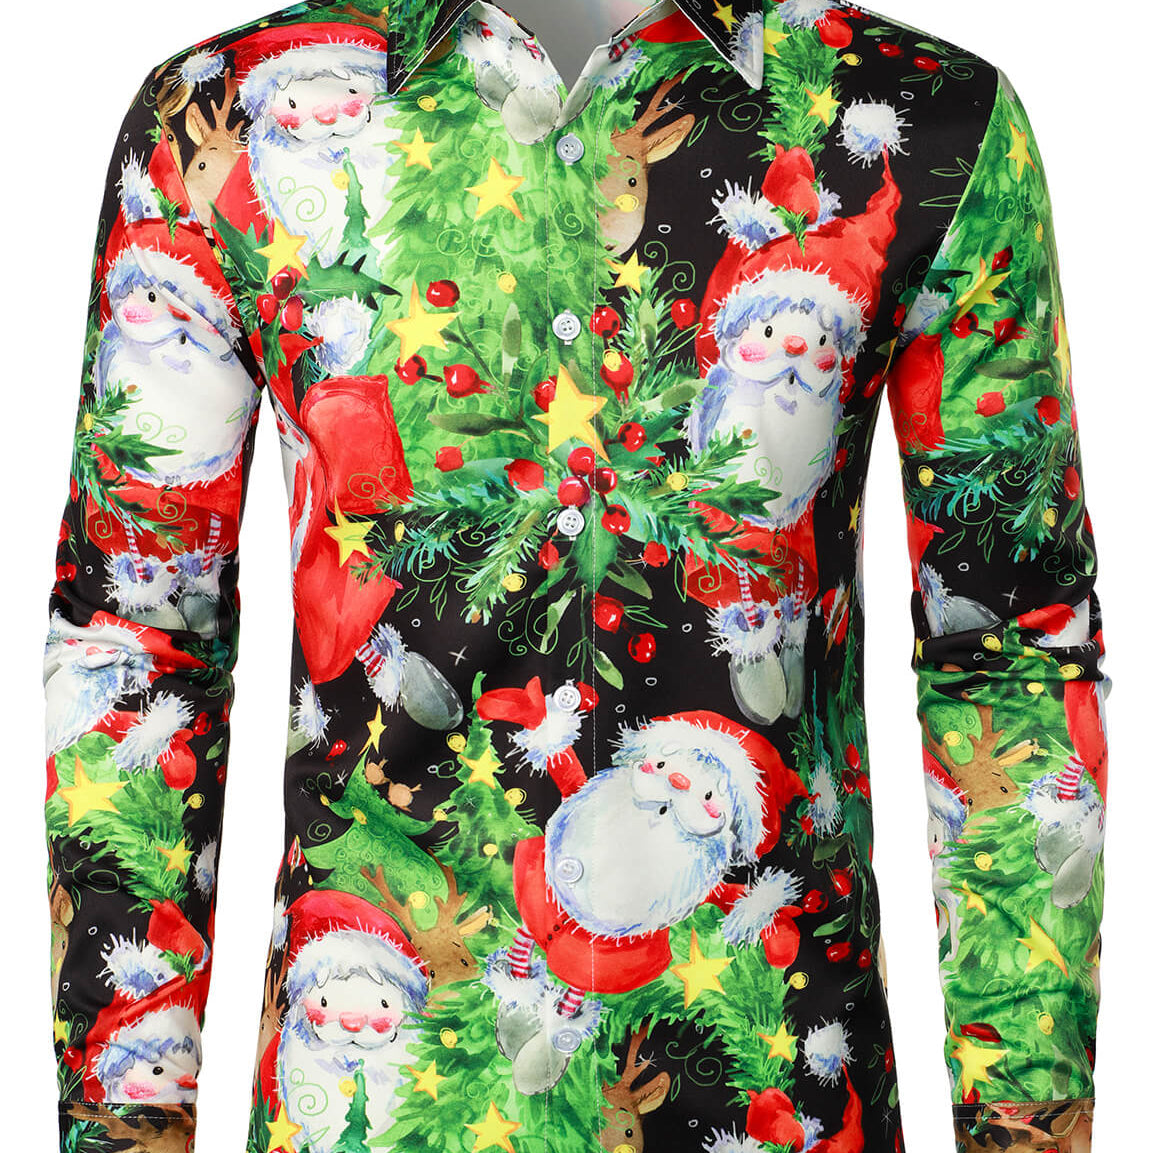 Camisa de manga larga con botones para fiesta navideña, árbol de Navidad, alce, reno, Papá Noel, vintage, para hombre